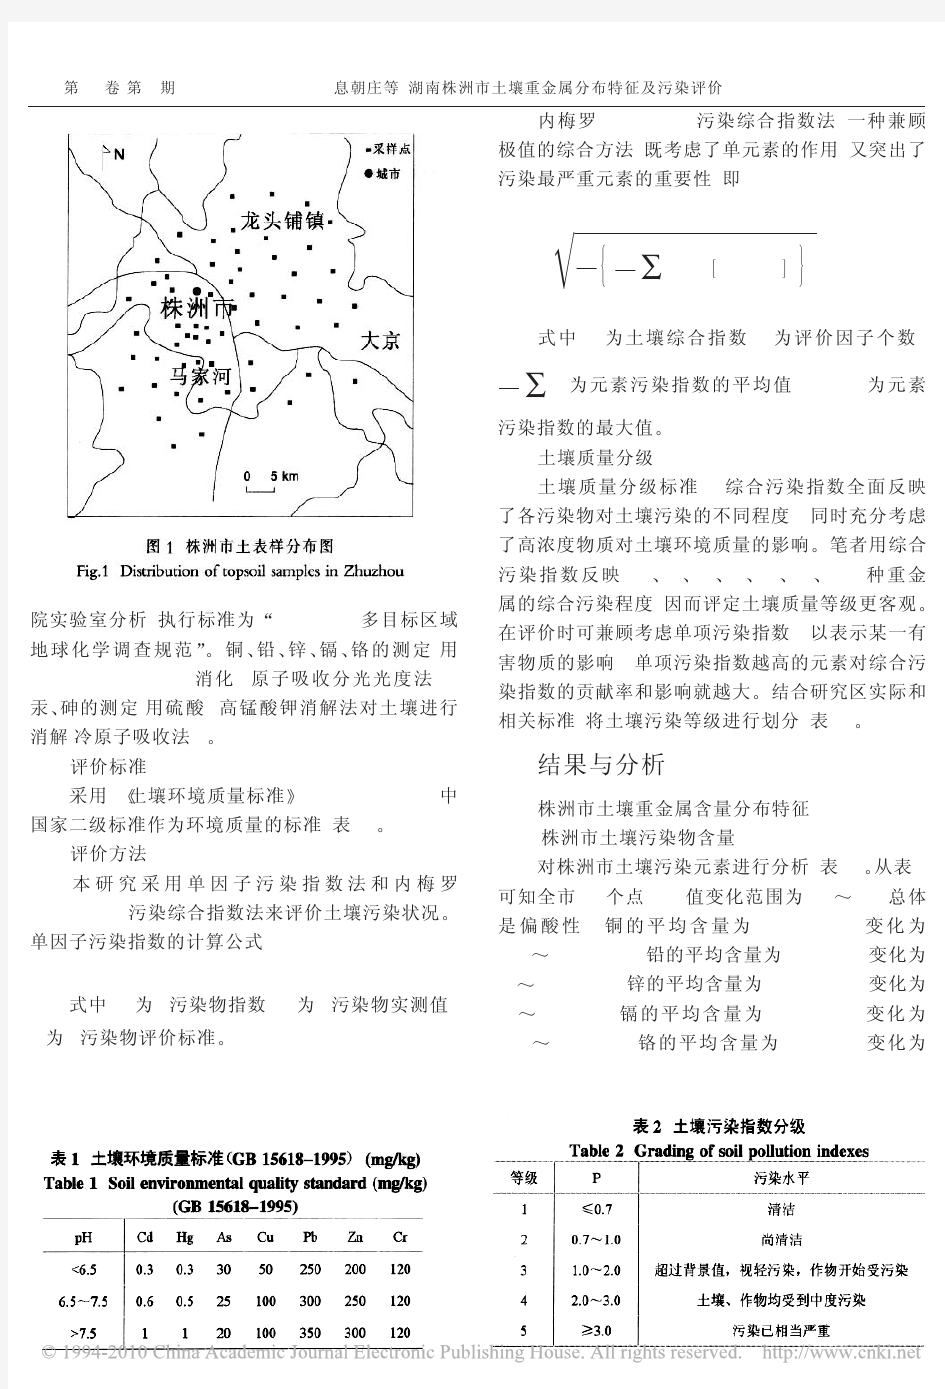 湖南株洲市土壤重金属分布特征及污染评价